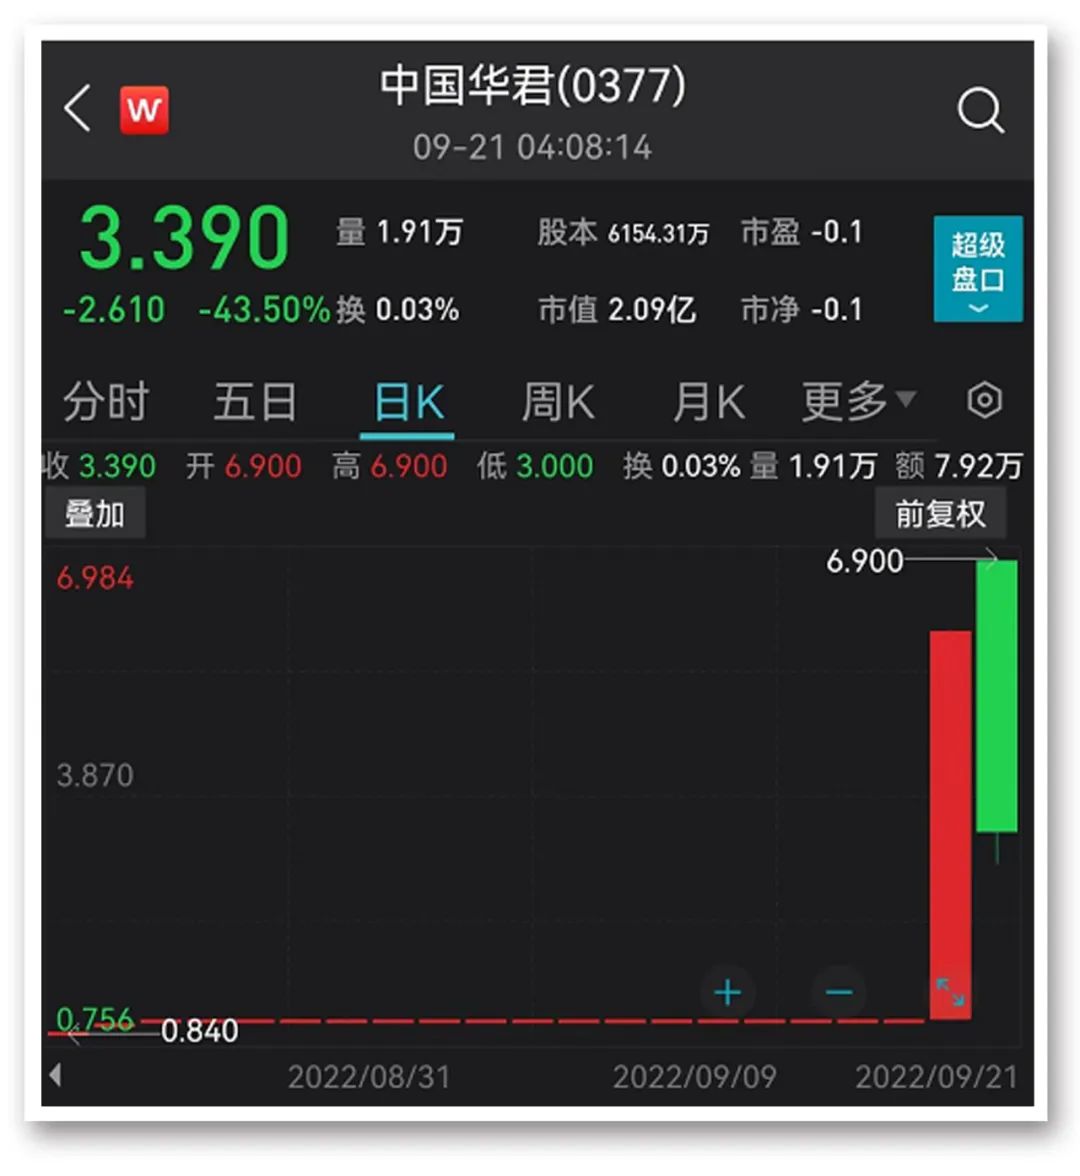 “中国神土”涨停 “8”字头股票霸屏涨幅榜